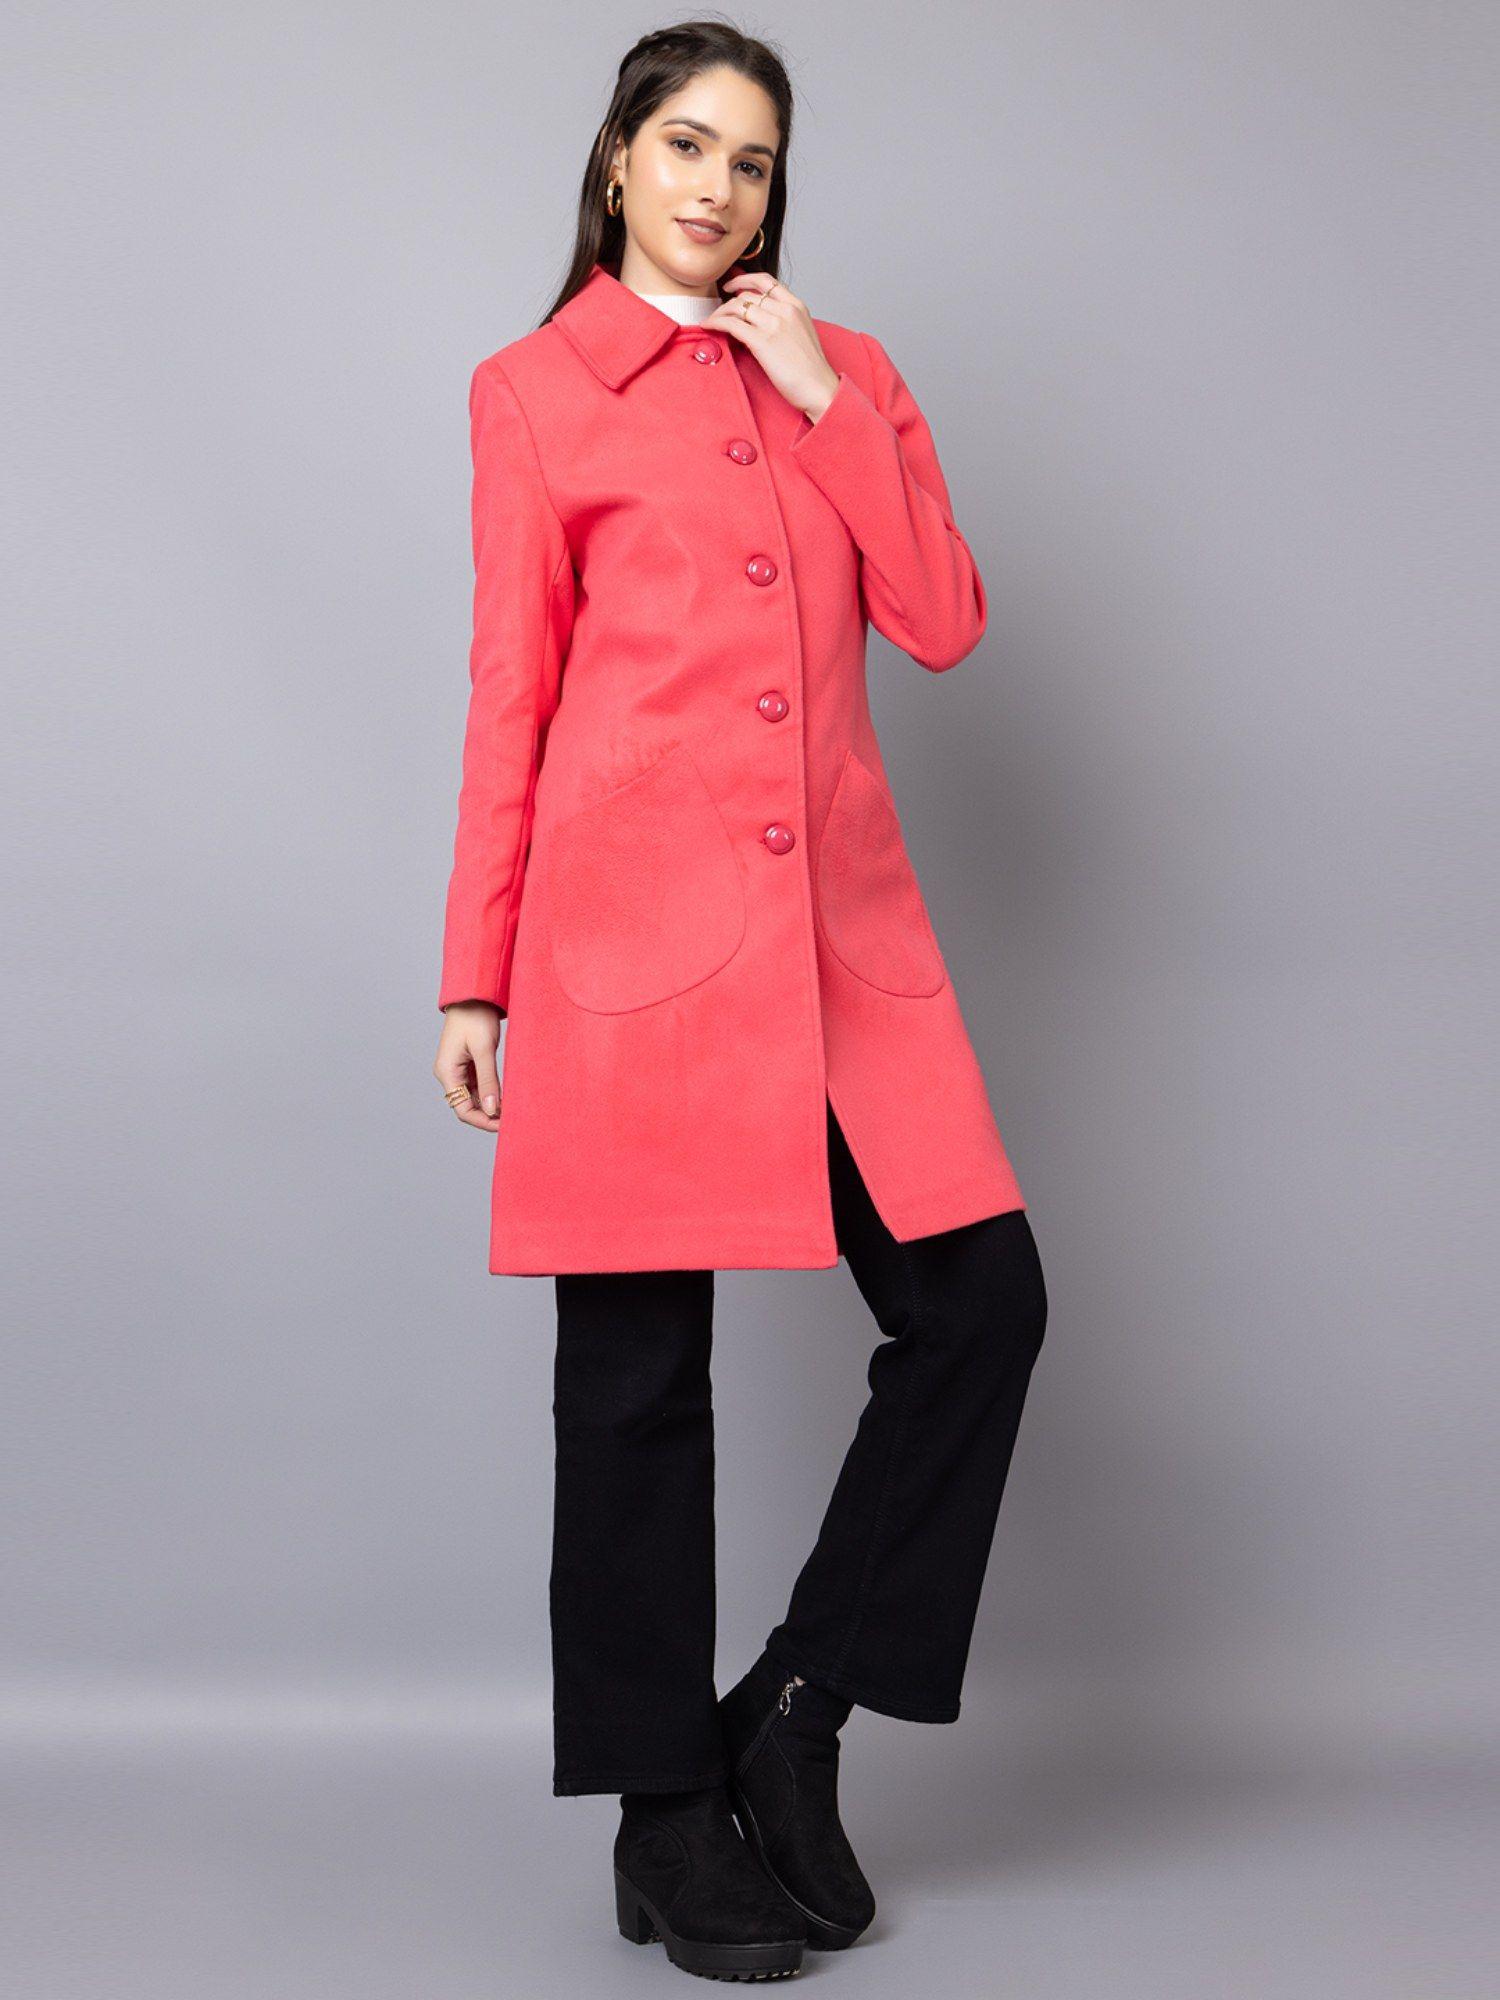 women winter wear stylish pink coat